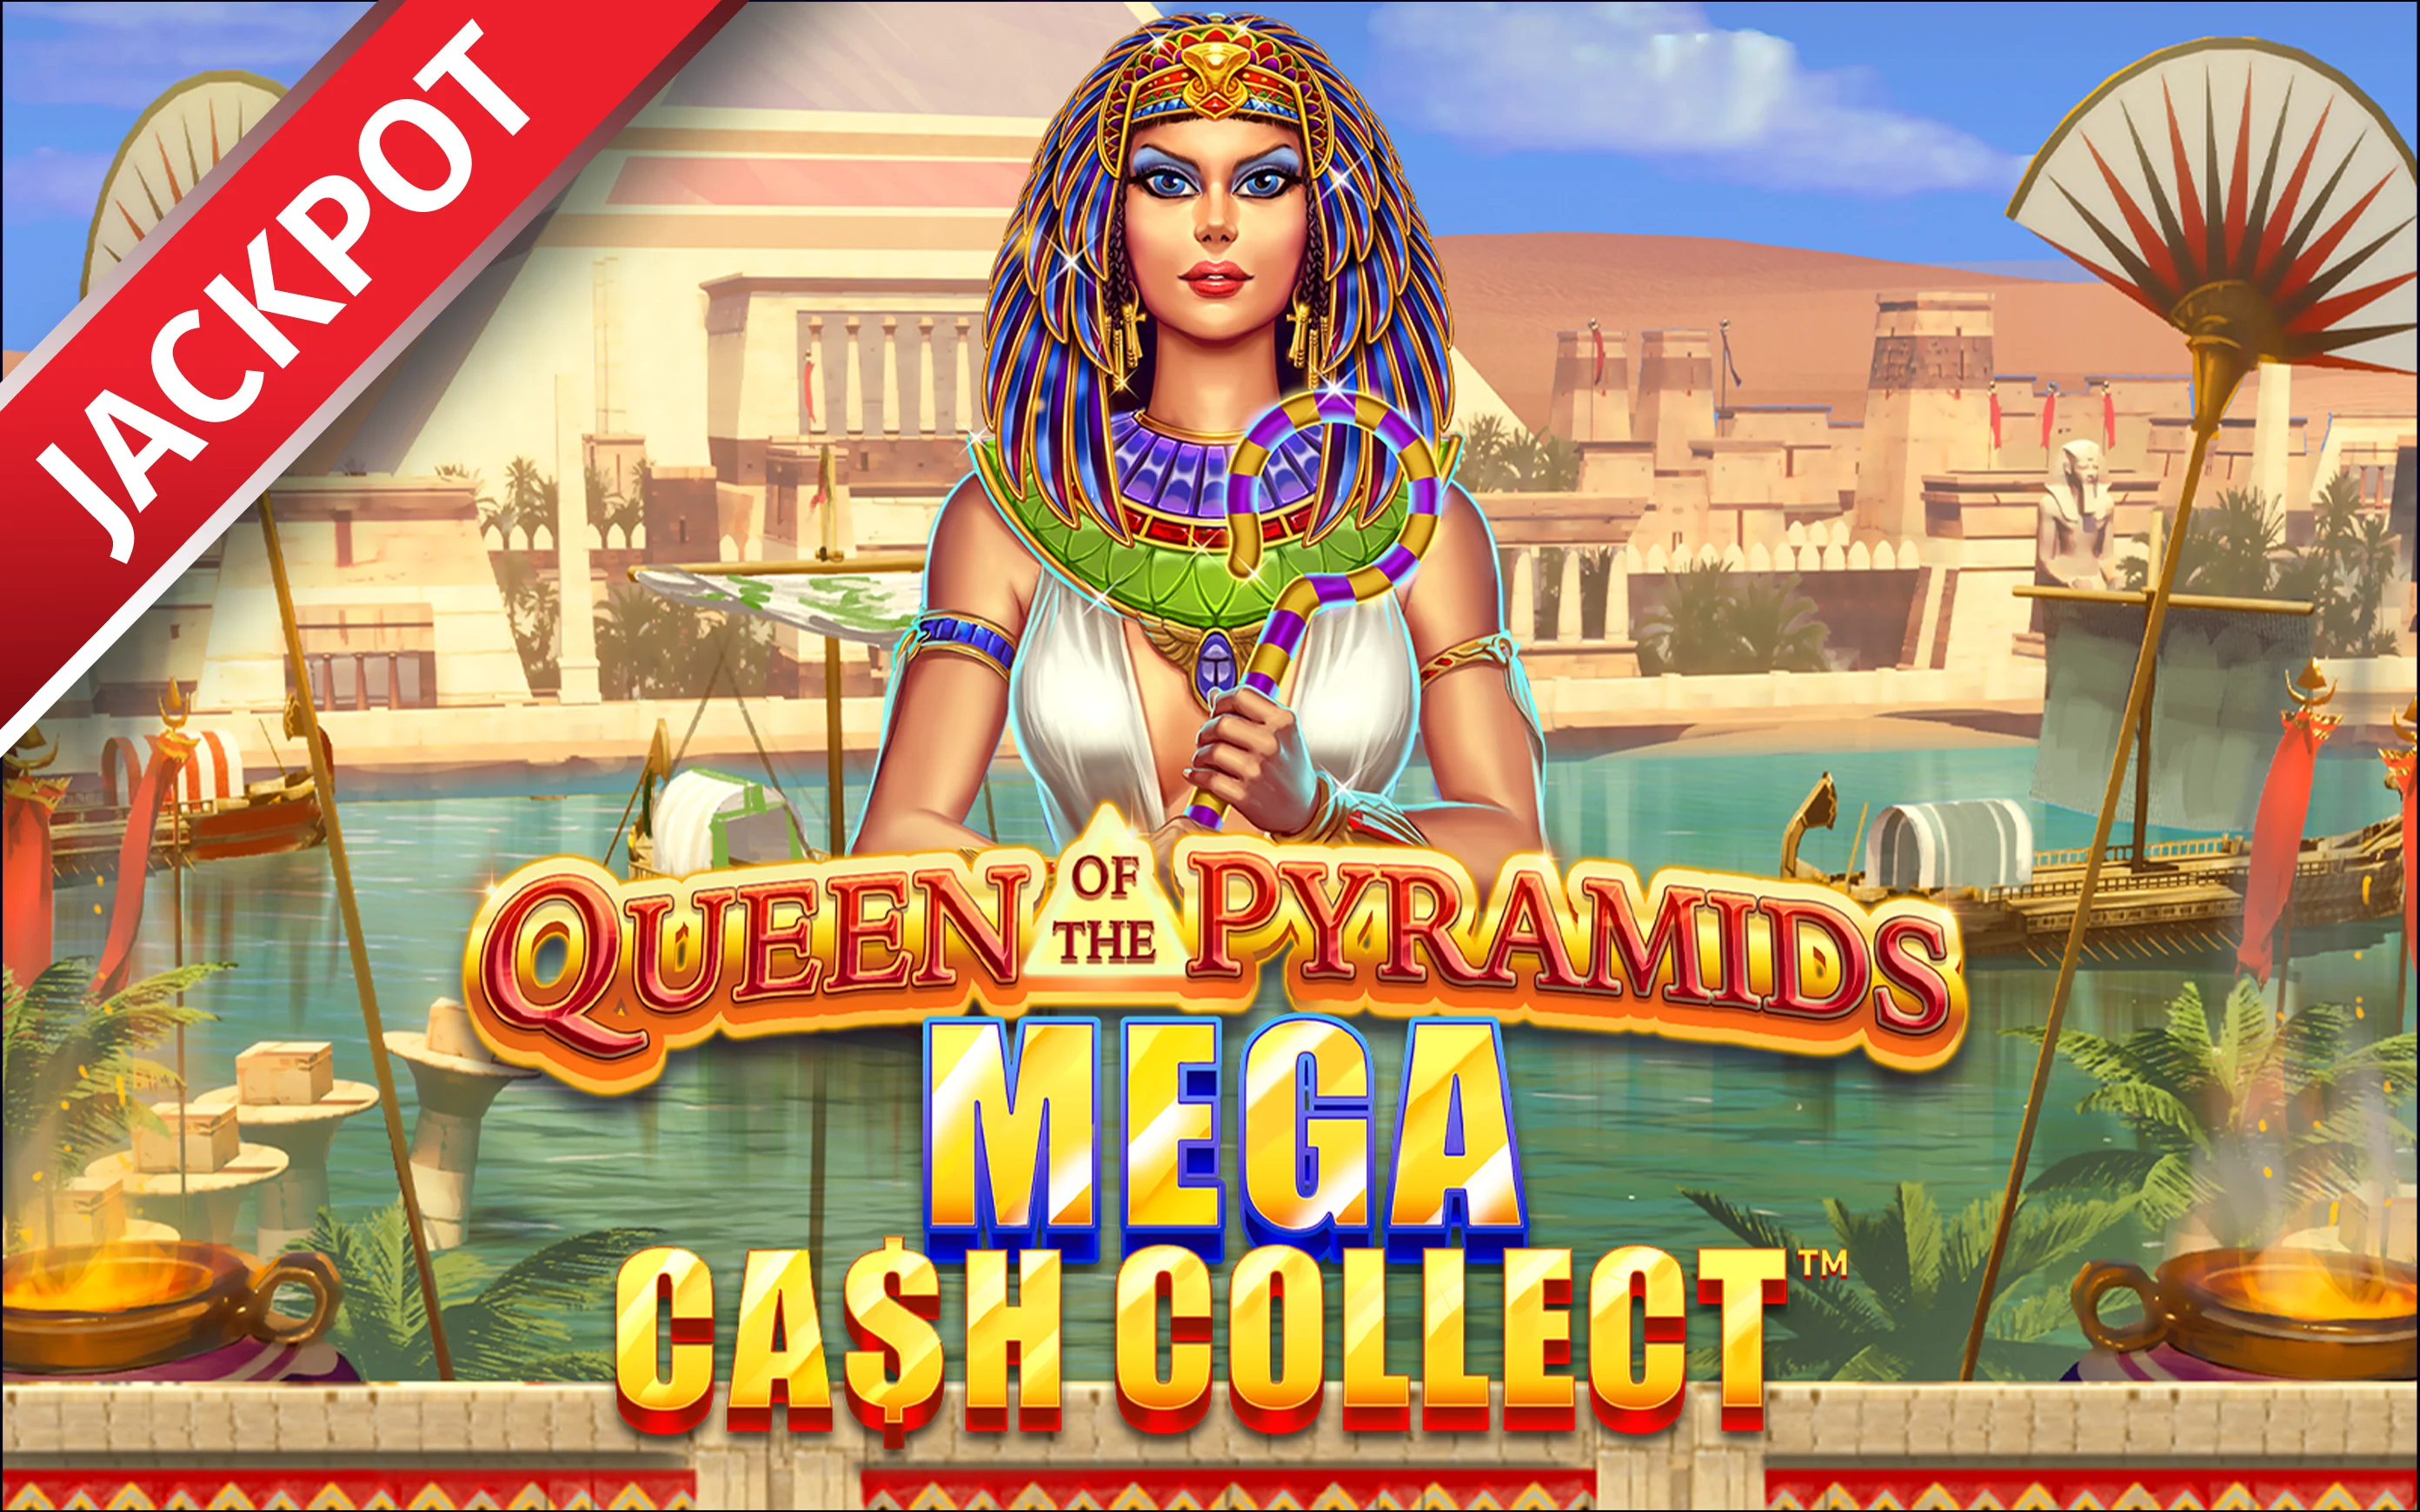 Jouer à Queen of the Pyramids: Mega Cash Collect™ sur le casino en ligne Starcasino.be